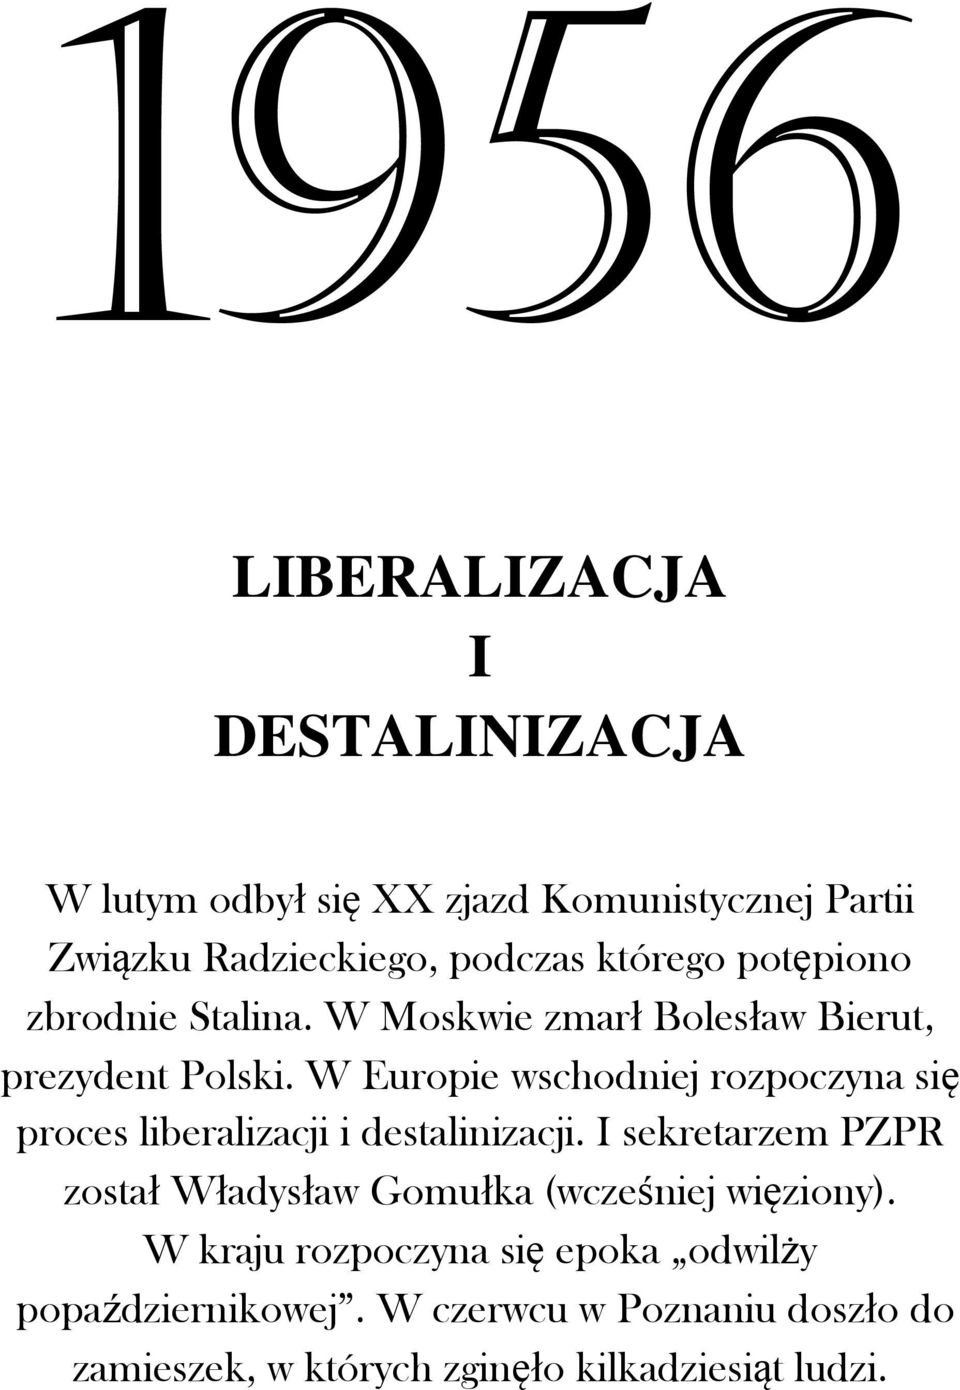 W Europie wschodniej rozpoczyna się proces liberalizacji i destalinizacji.